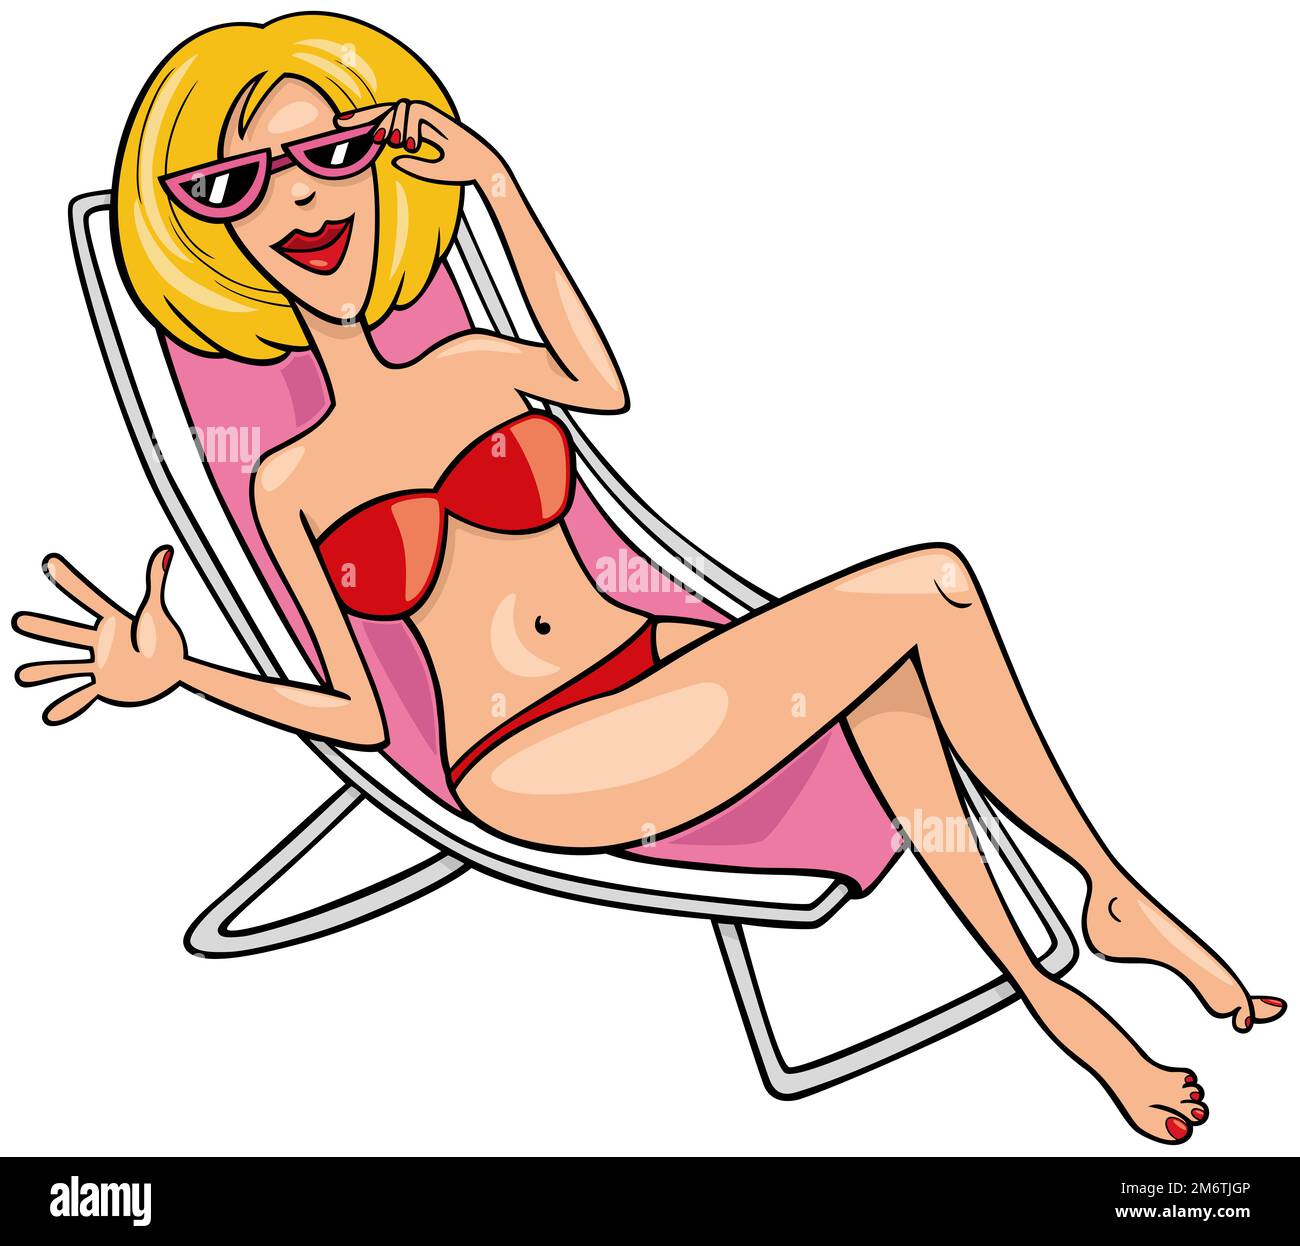 Bikini cartoon hi-res stock photography and images - Alamy